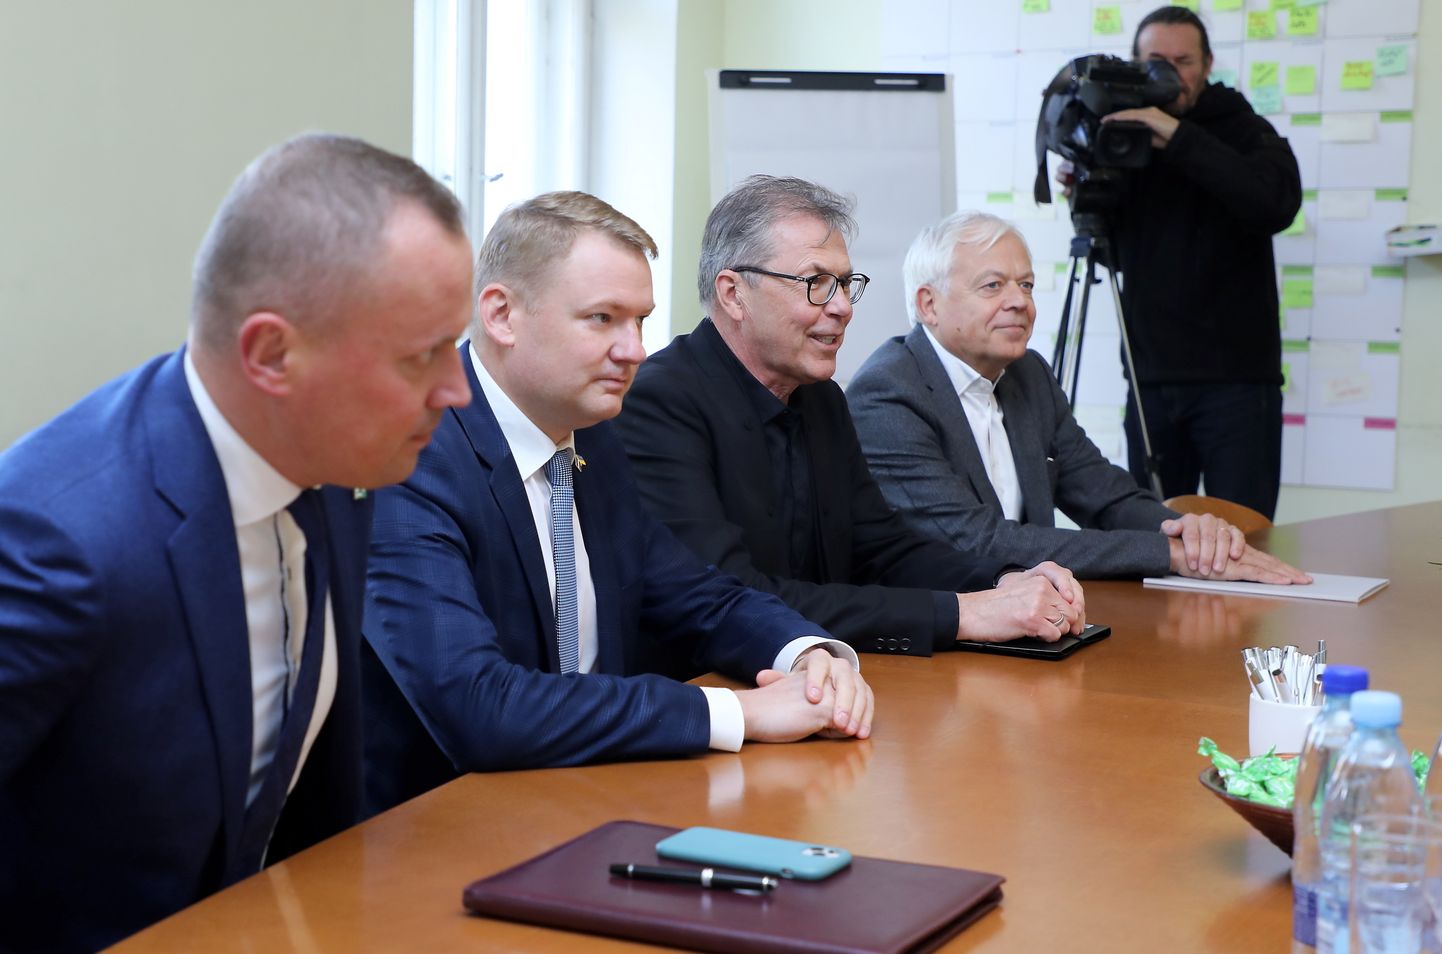 Partijas "Apvienotais saraksts" pārstāvji - "Latvijas Liepājas partija" līdzpriekšsēdētājs, "Latvijas Zaļā partija" vadītājs un 13. Saeimas deputāts Edgars Tavars (no kreisās), "Latvijas Reģionu apvienība" valdes priekšsēdētājs Edvards Smiltēns, Ministru prezidenta amata kandidāts Uldis Pīlēns un Liepājas partijas priekšsēdētājs Uldis Sesks tikšanās laikā ar partijas "Jaunā vienotība" pārstāvjiem, kurā pārrunās jaunās valdības prioritātes un darāmos darbus 14. Saeimā.